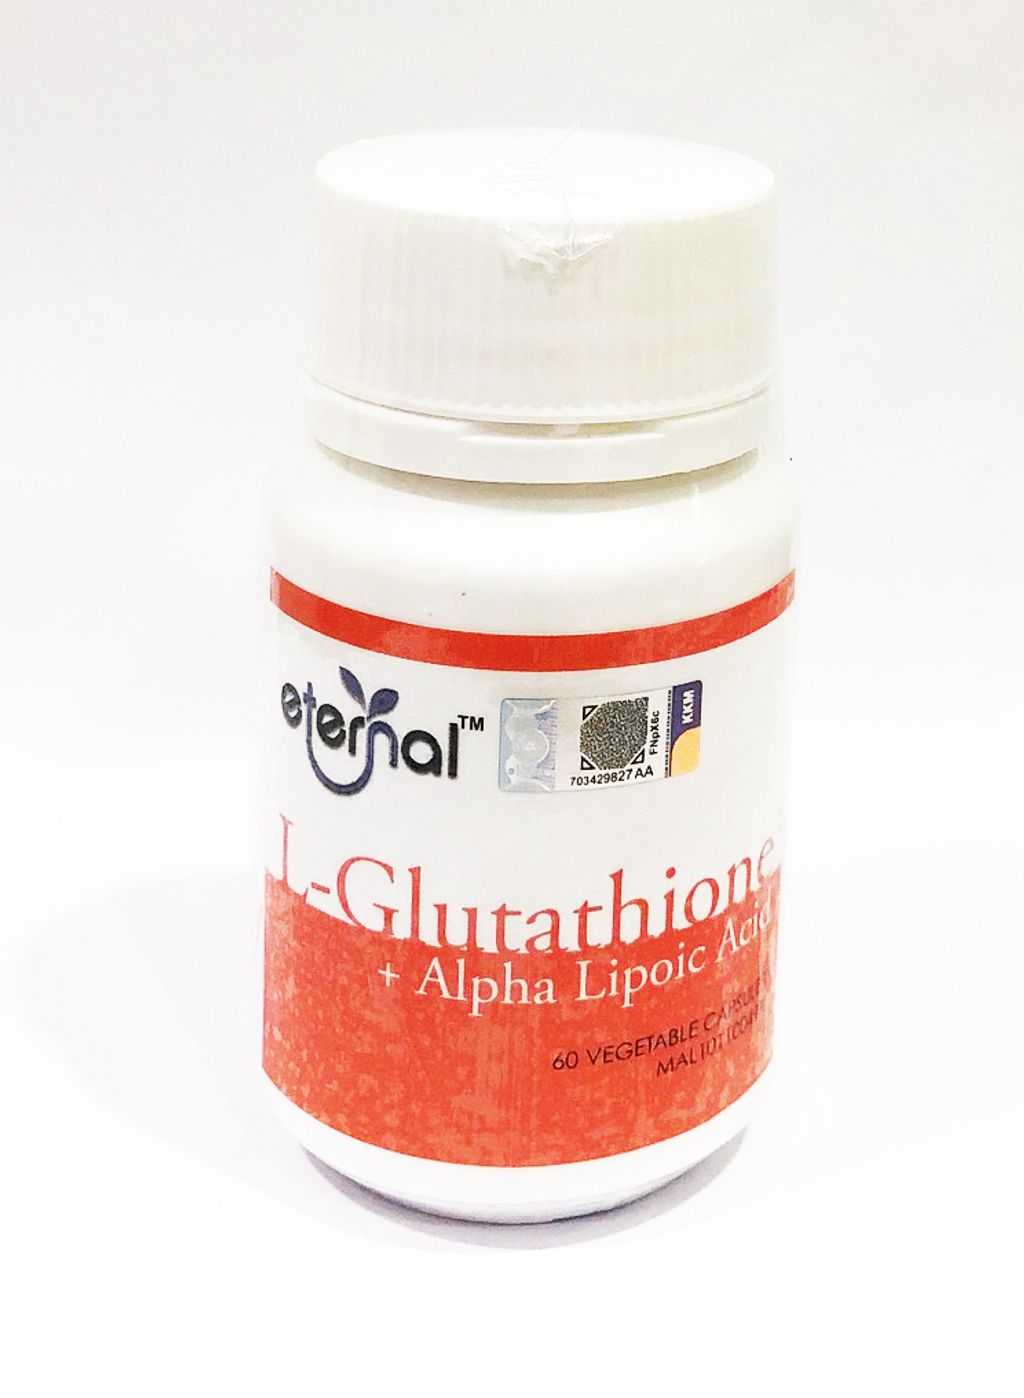 L-Glutathione photo front.jpg